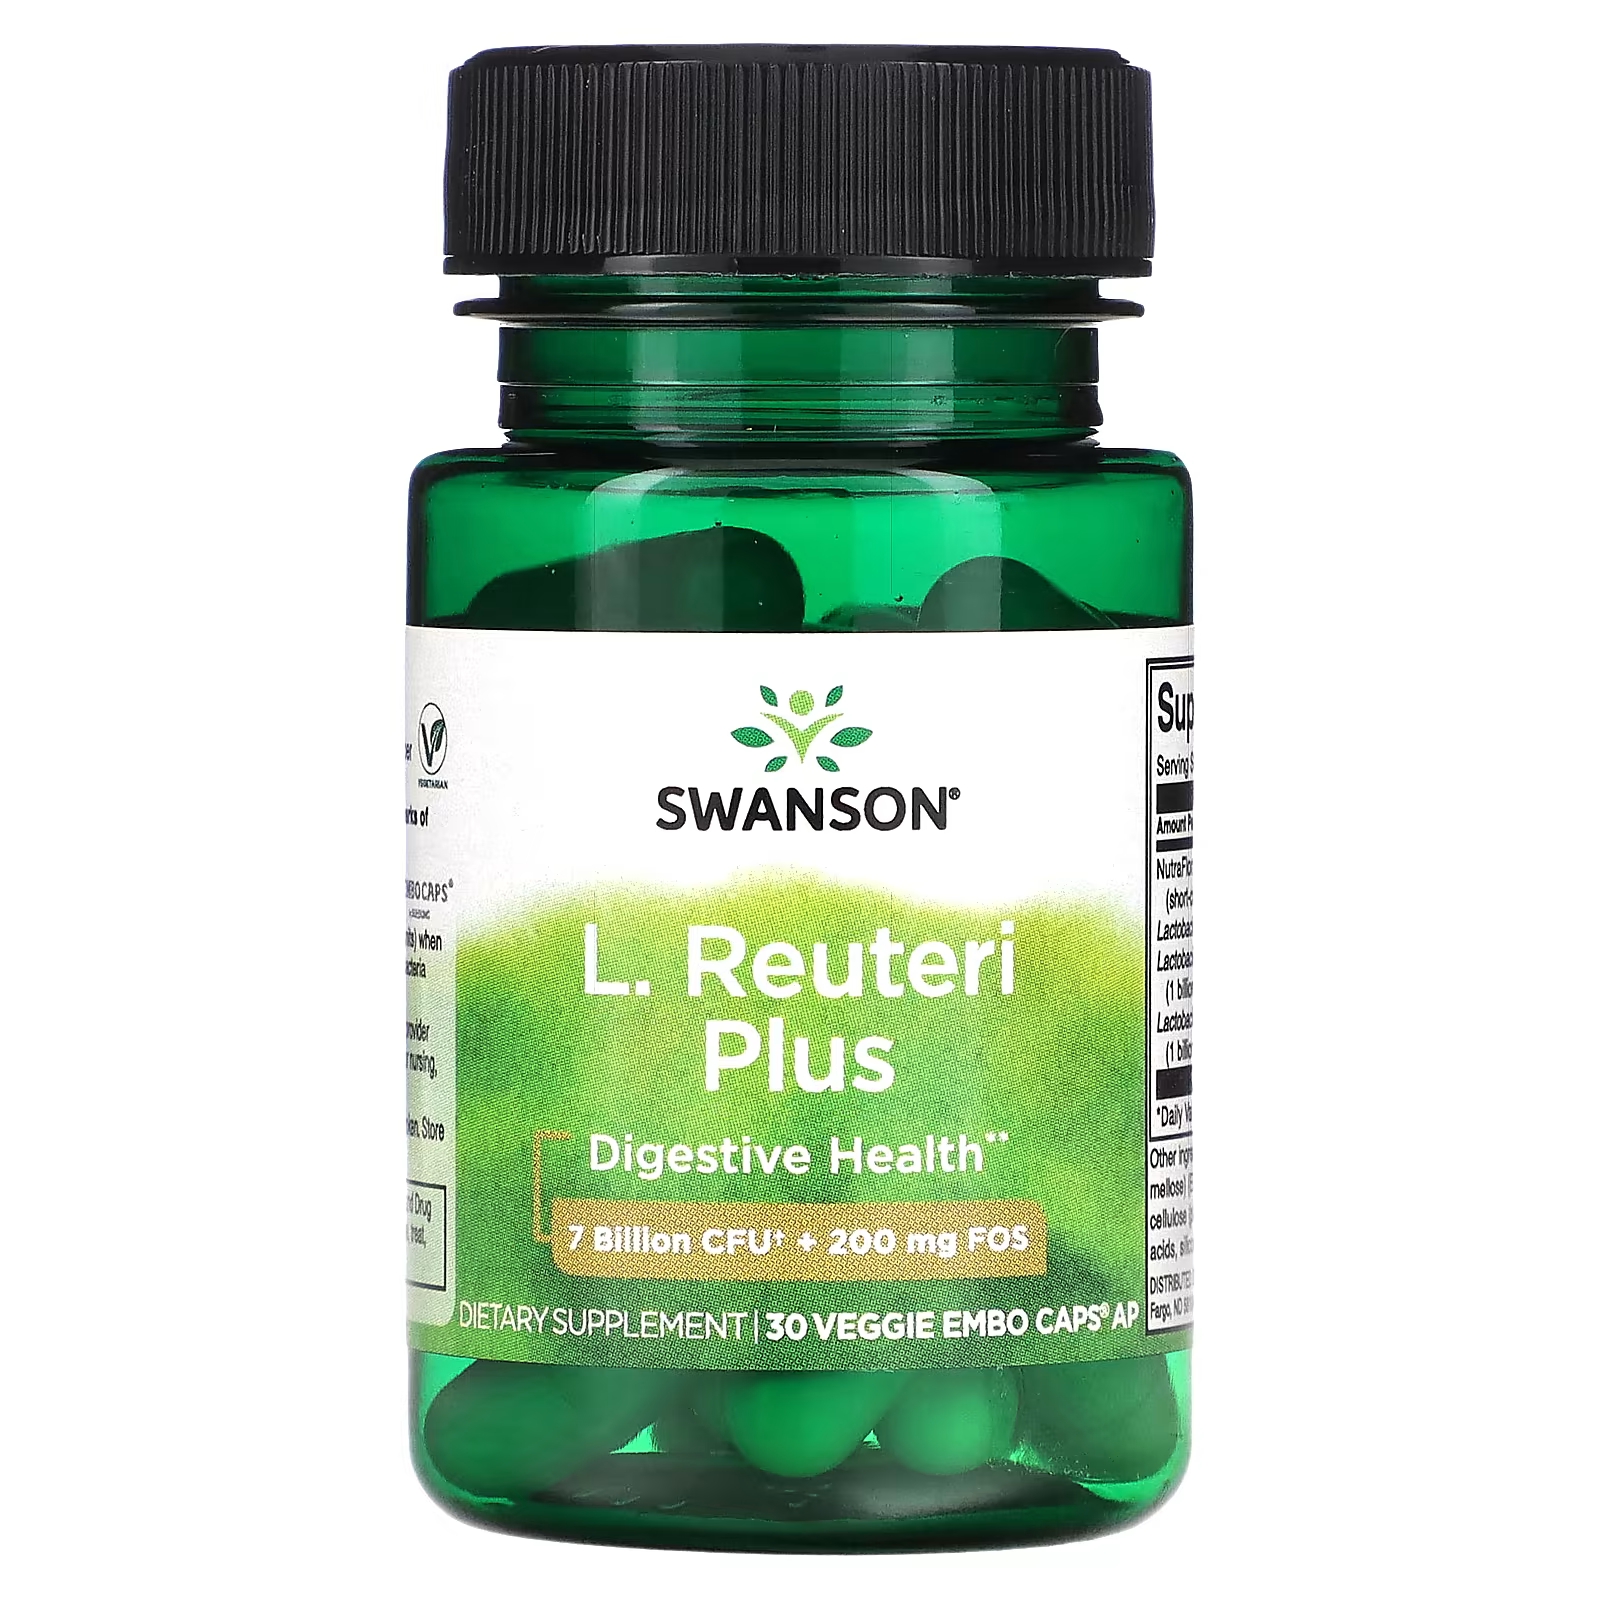 Пищевая добавка Swanson L. Reuteri Plus, 30 растительных капсул пробиотический комплекс l reuteri plus swanson 30 капсул 4 упаковки